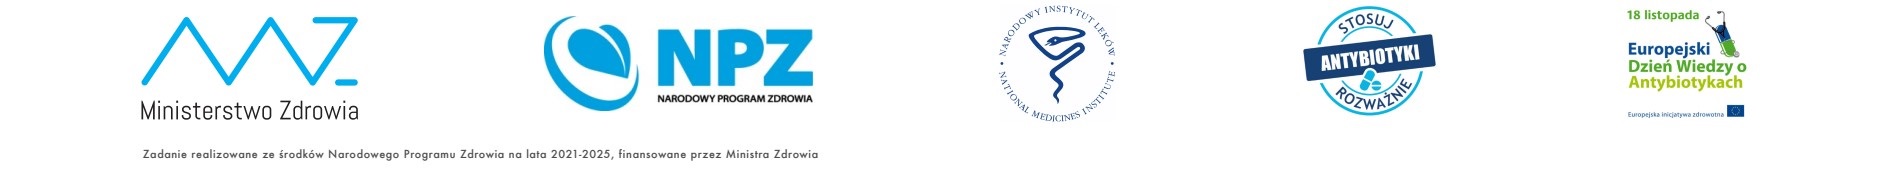 logo realizatorów - Ministerstwo Zdrowia, Narodowy Program Zdrowia, Narodowy Instytut Leków